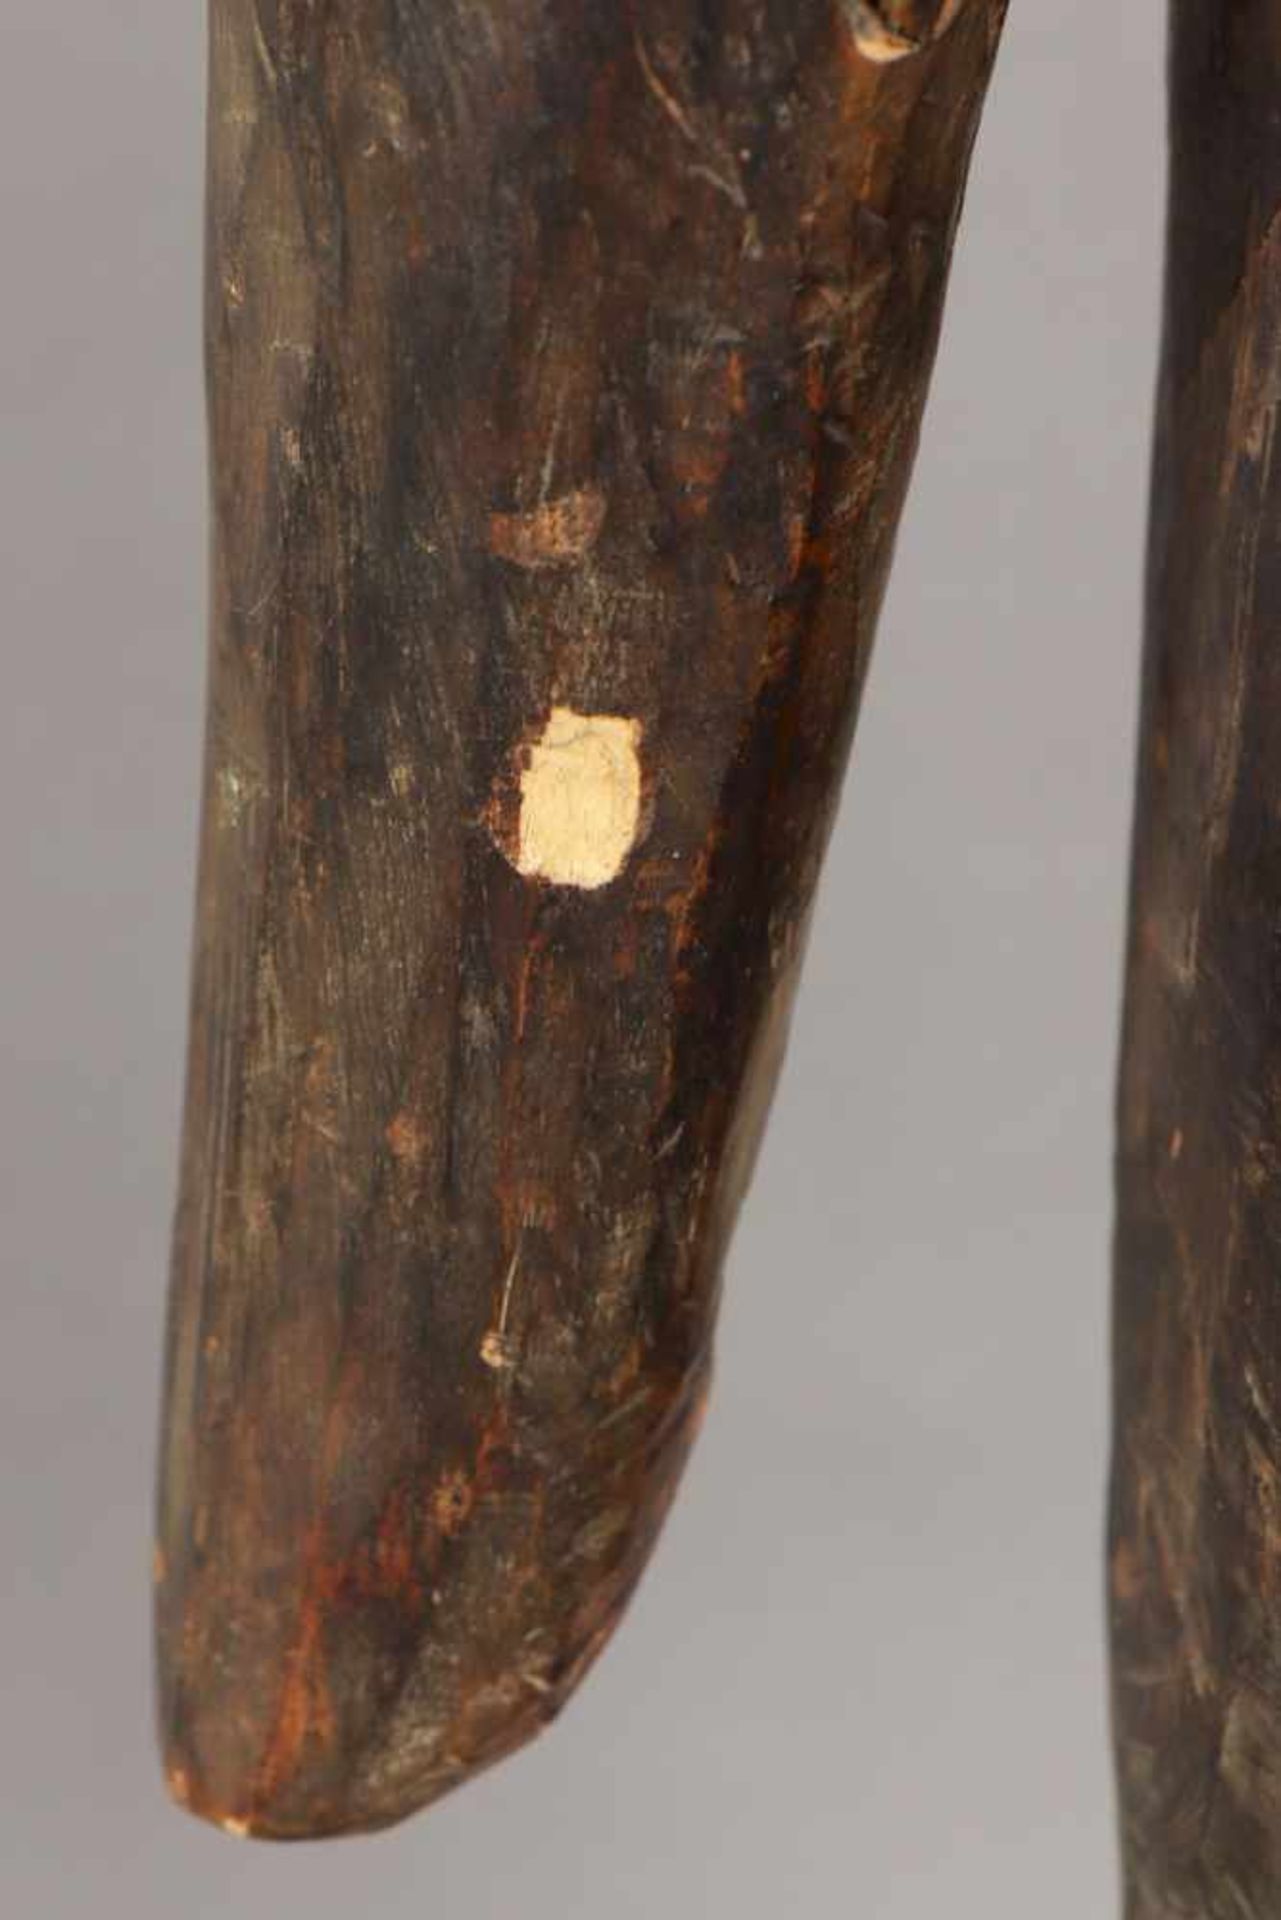 Afrikanische Ahnenfigur Holz, geschnitzt, geschwärzt und im Gesicht weiß gekalkt (Kaolin), wohl - Bild 4 aus 4